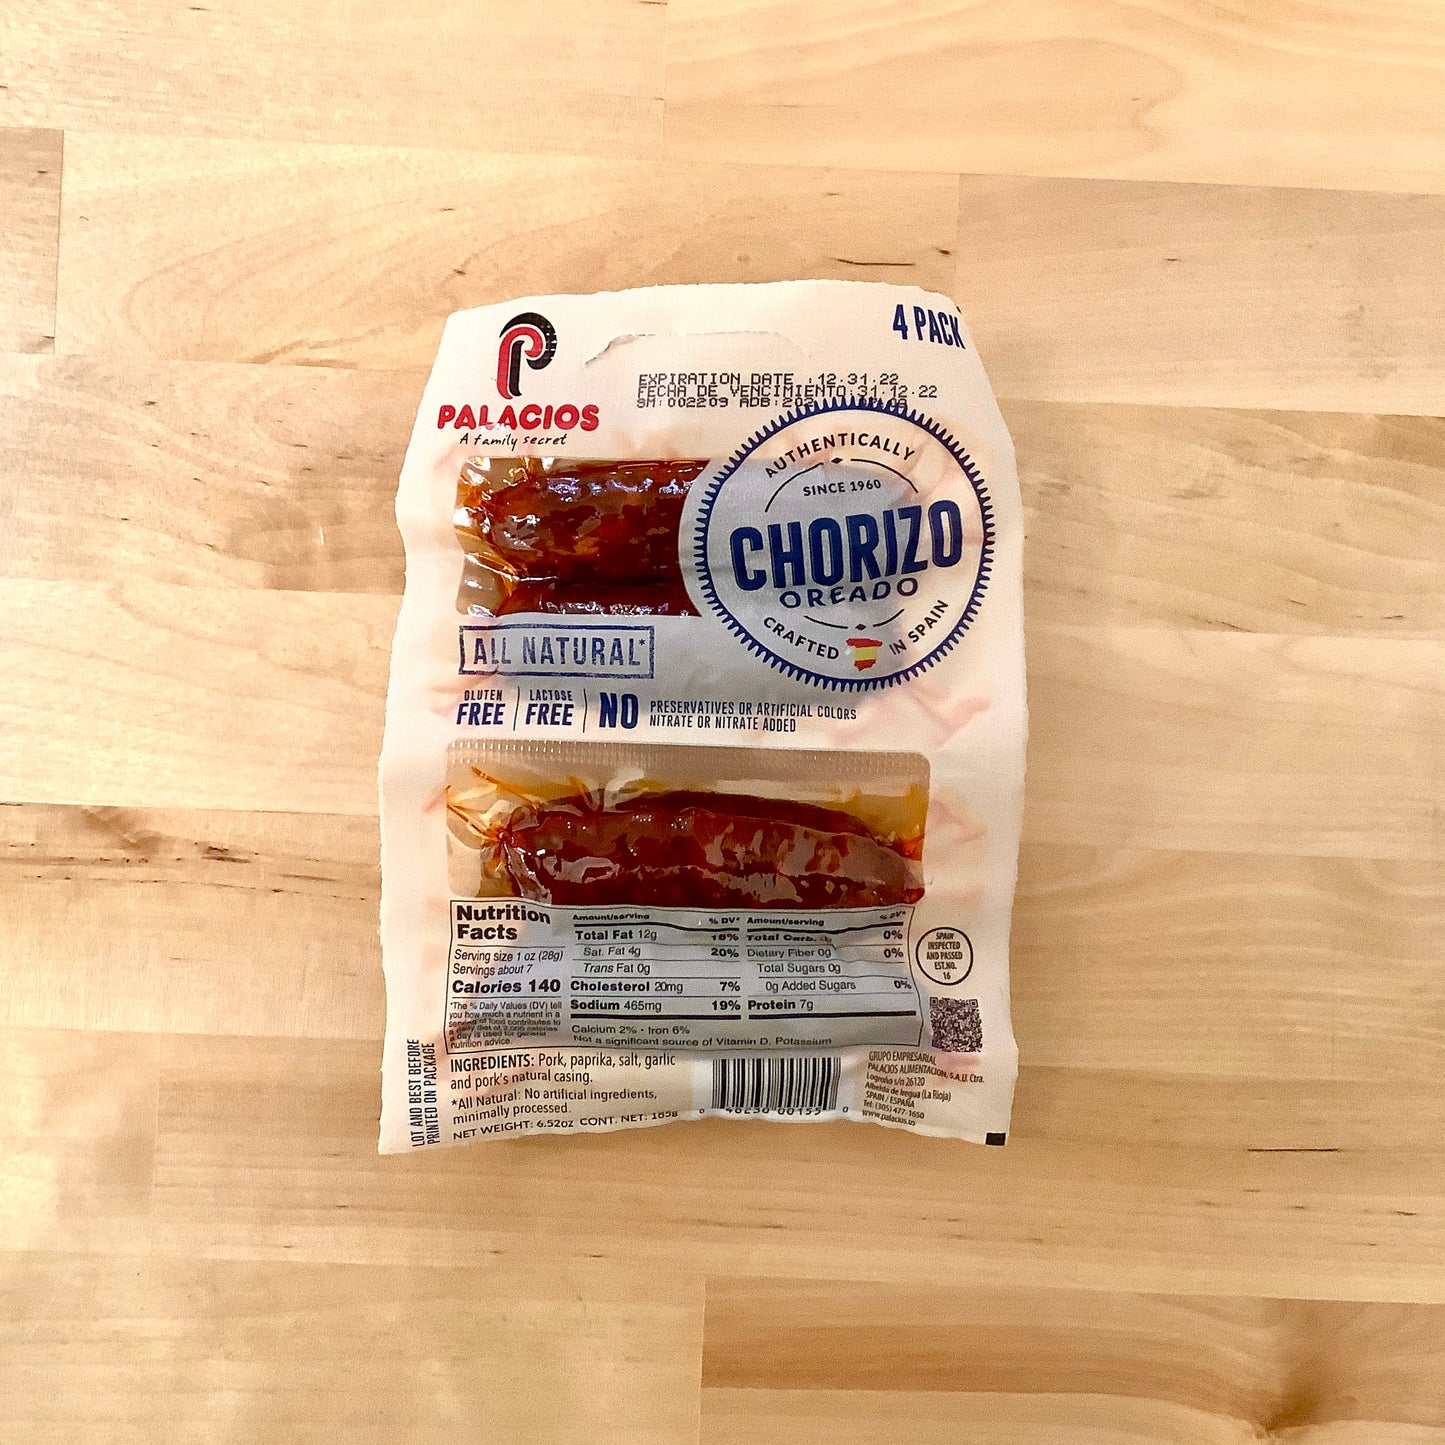 PALACIOS Chorizo, pack of 4 small links